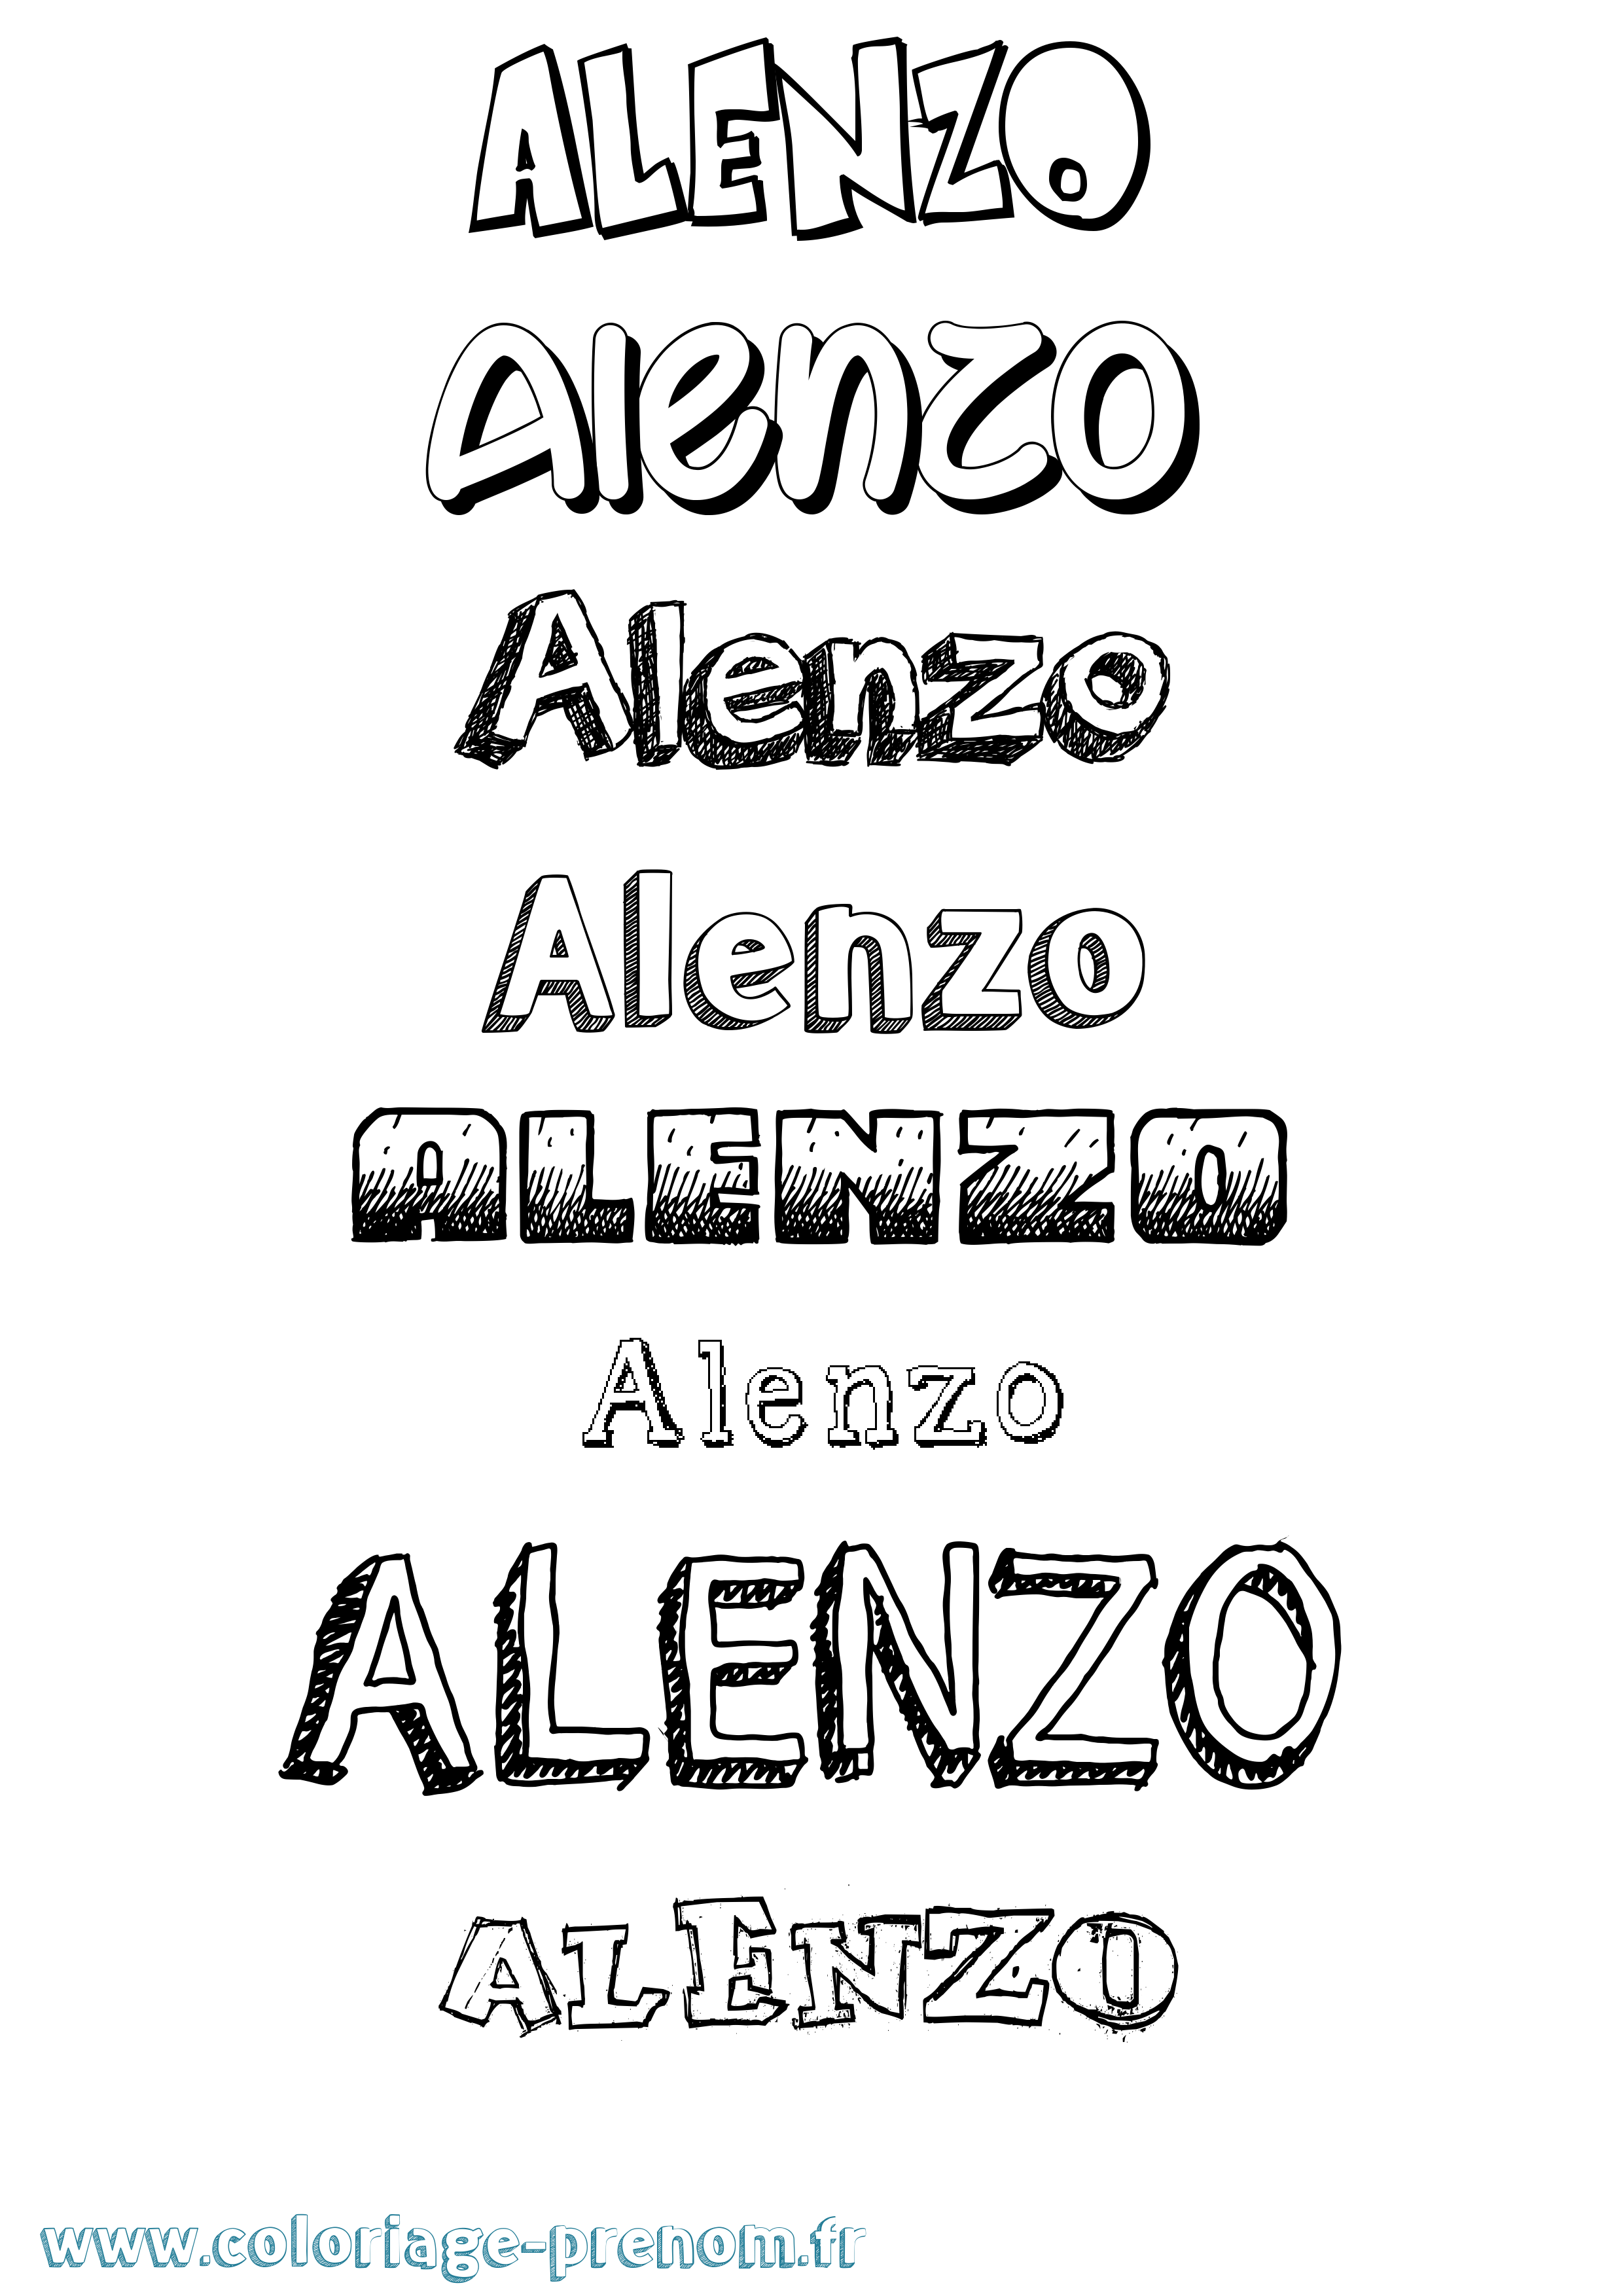 Coloriage prénom Alenzo Dessiné